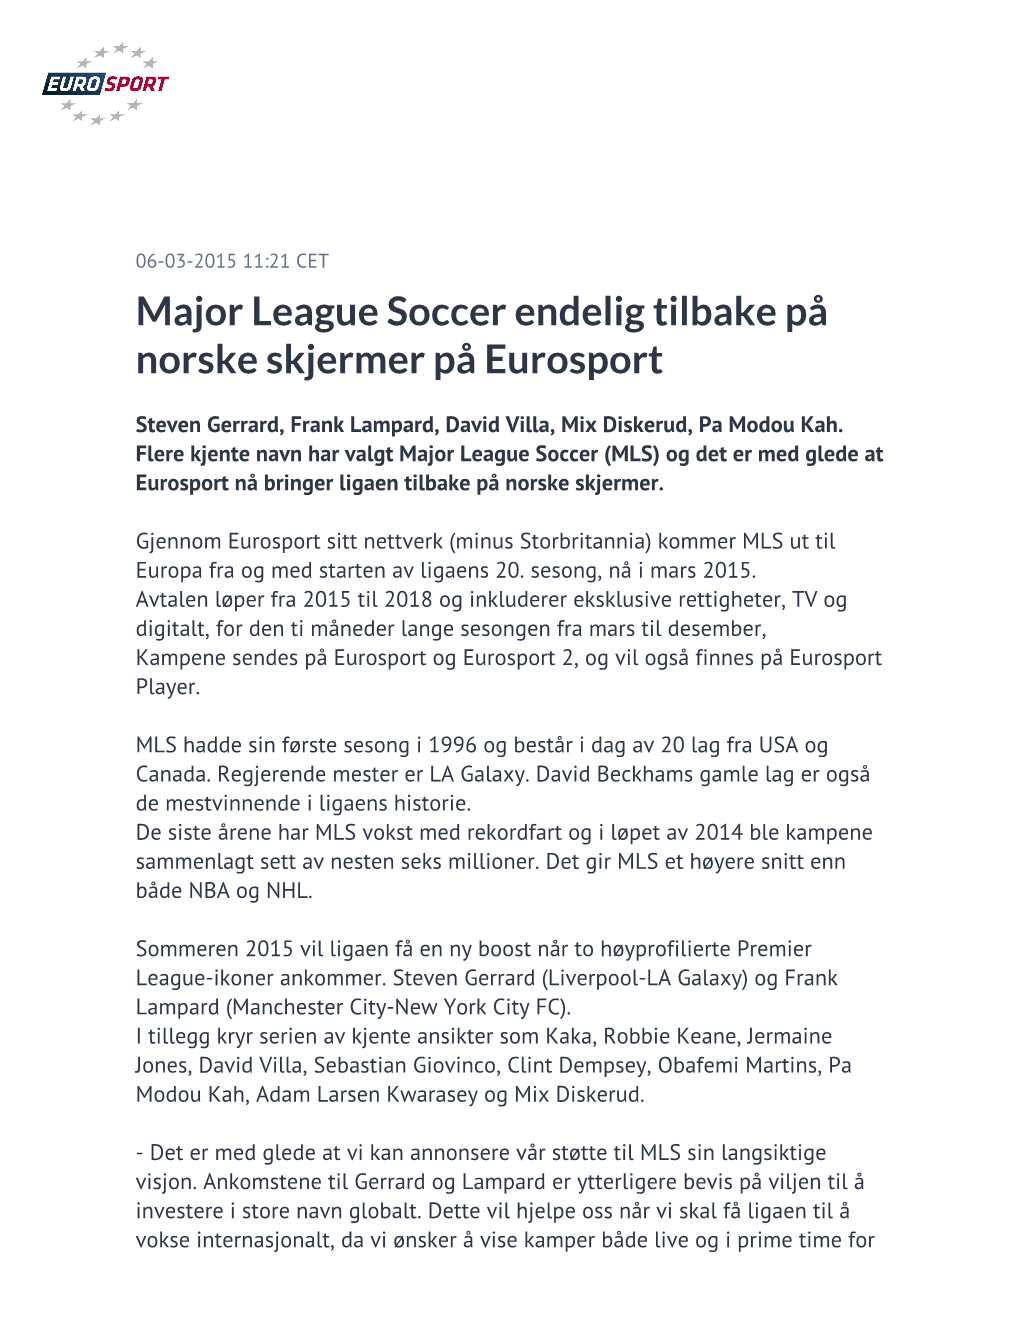 Major League Soccer Endelig Tilbake På Norske Skjermer På Eurosport